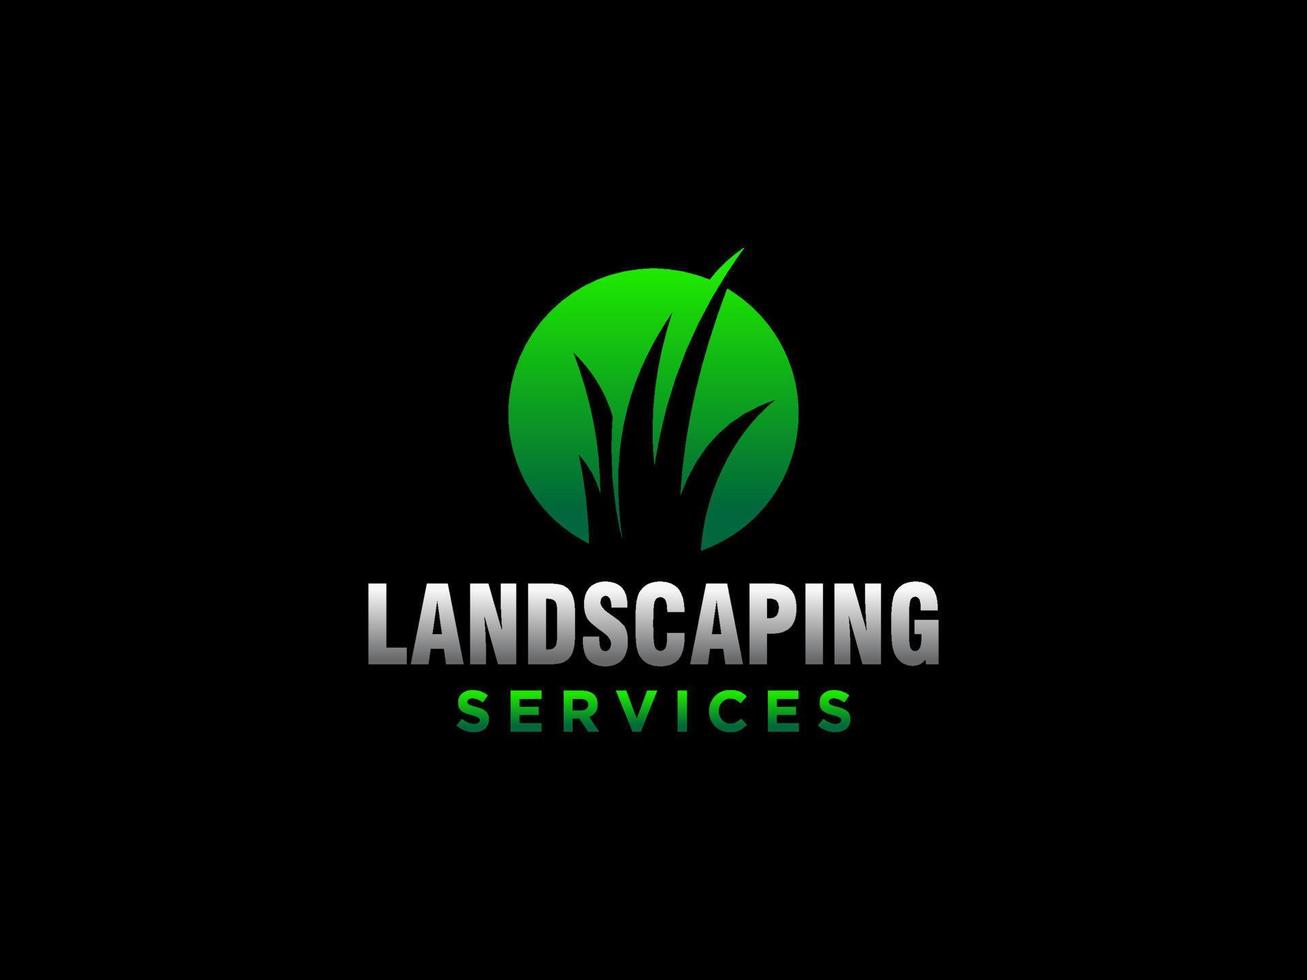 landschapslogo voor gazon- of tuinbedrijf, organisatie of website vector